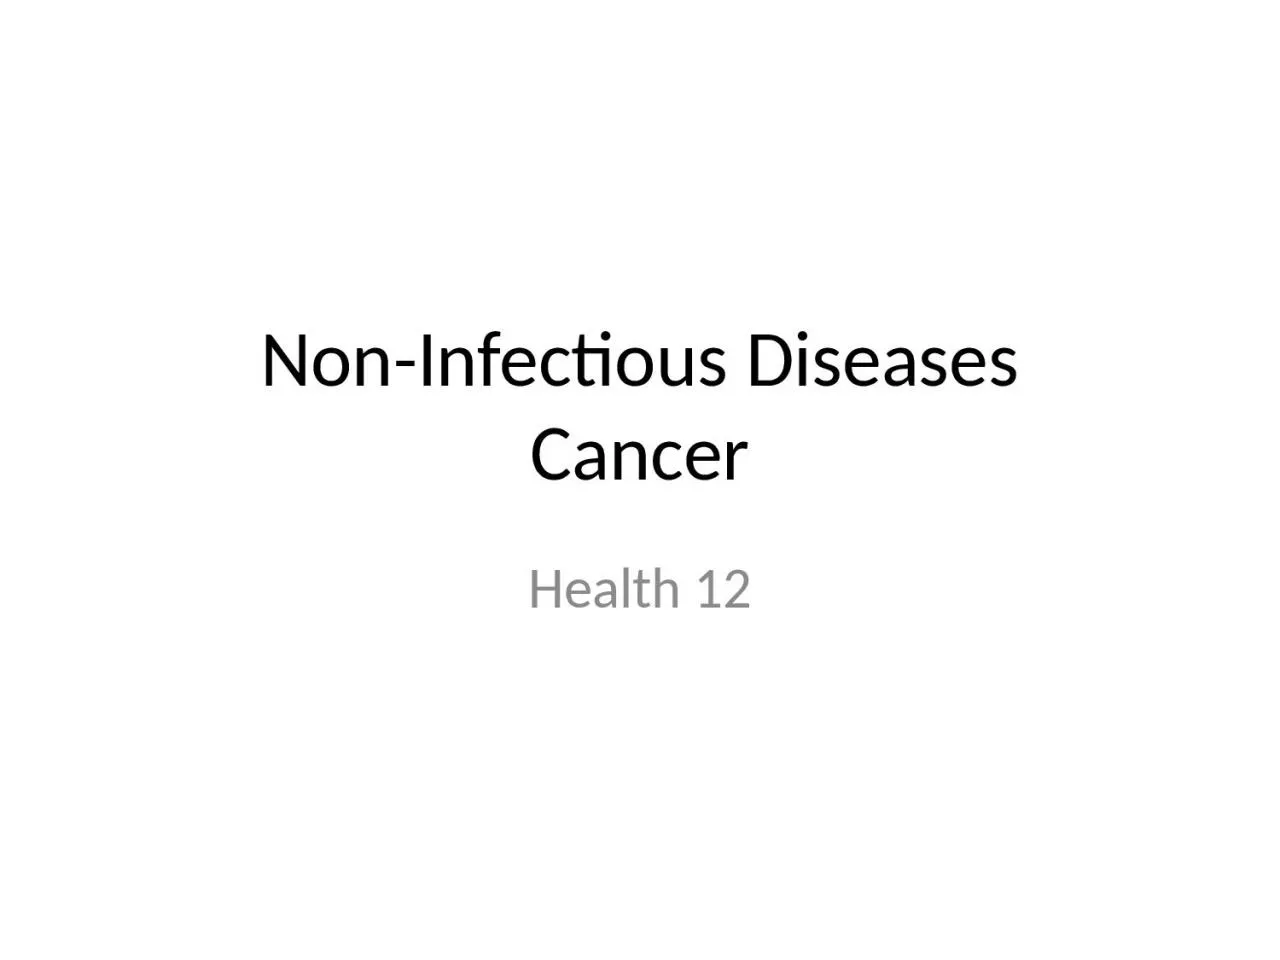 Non-Infectious Diseases Cancer